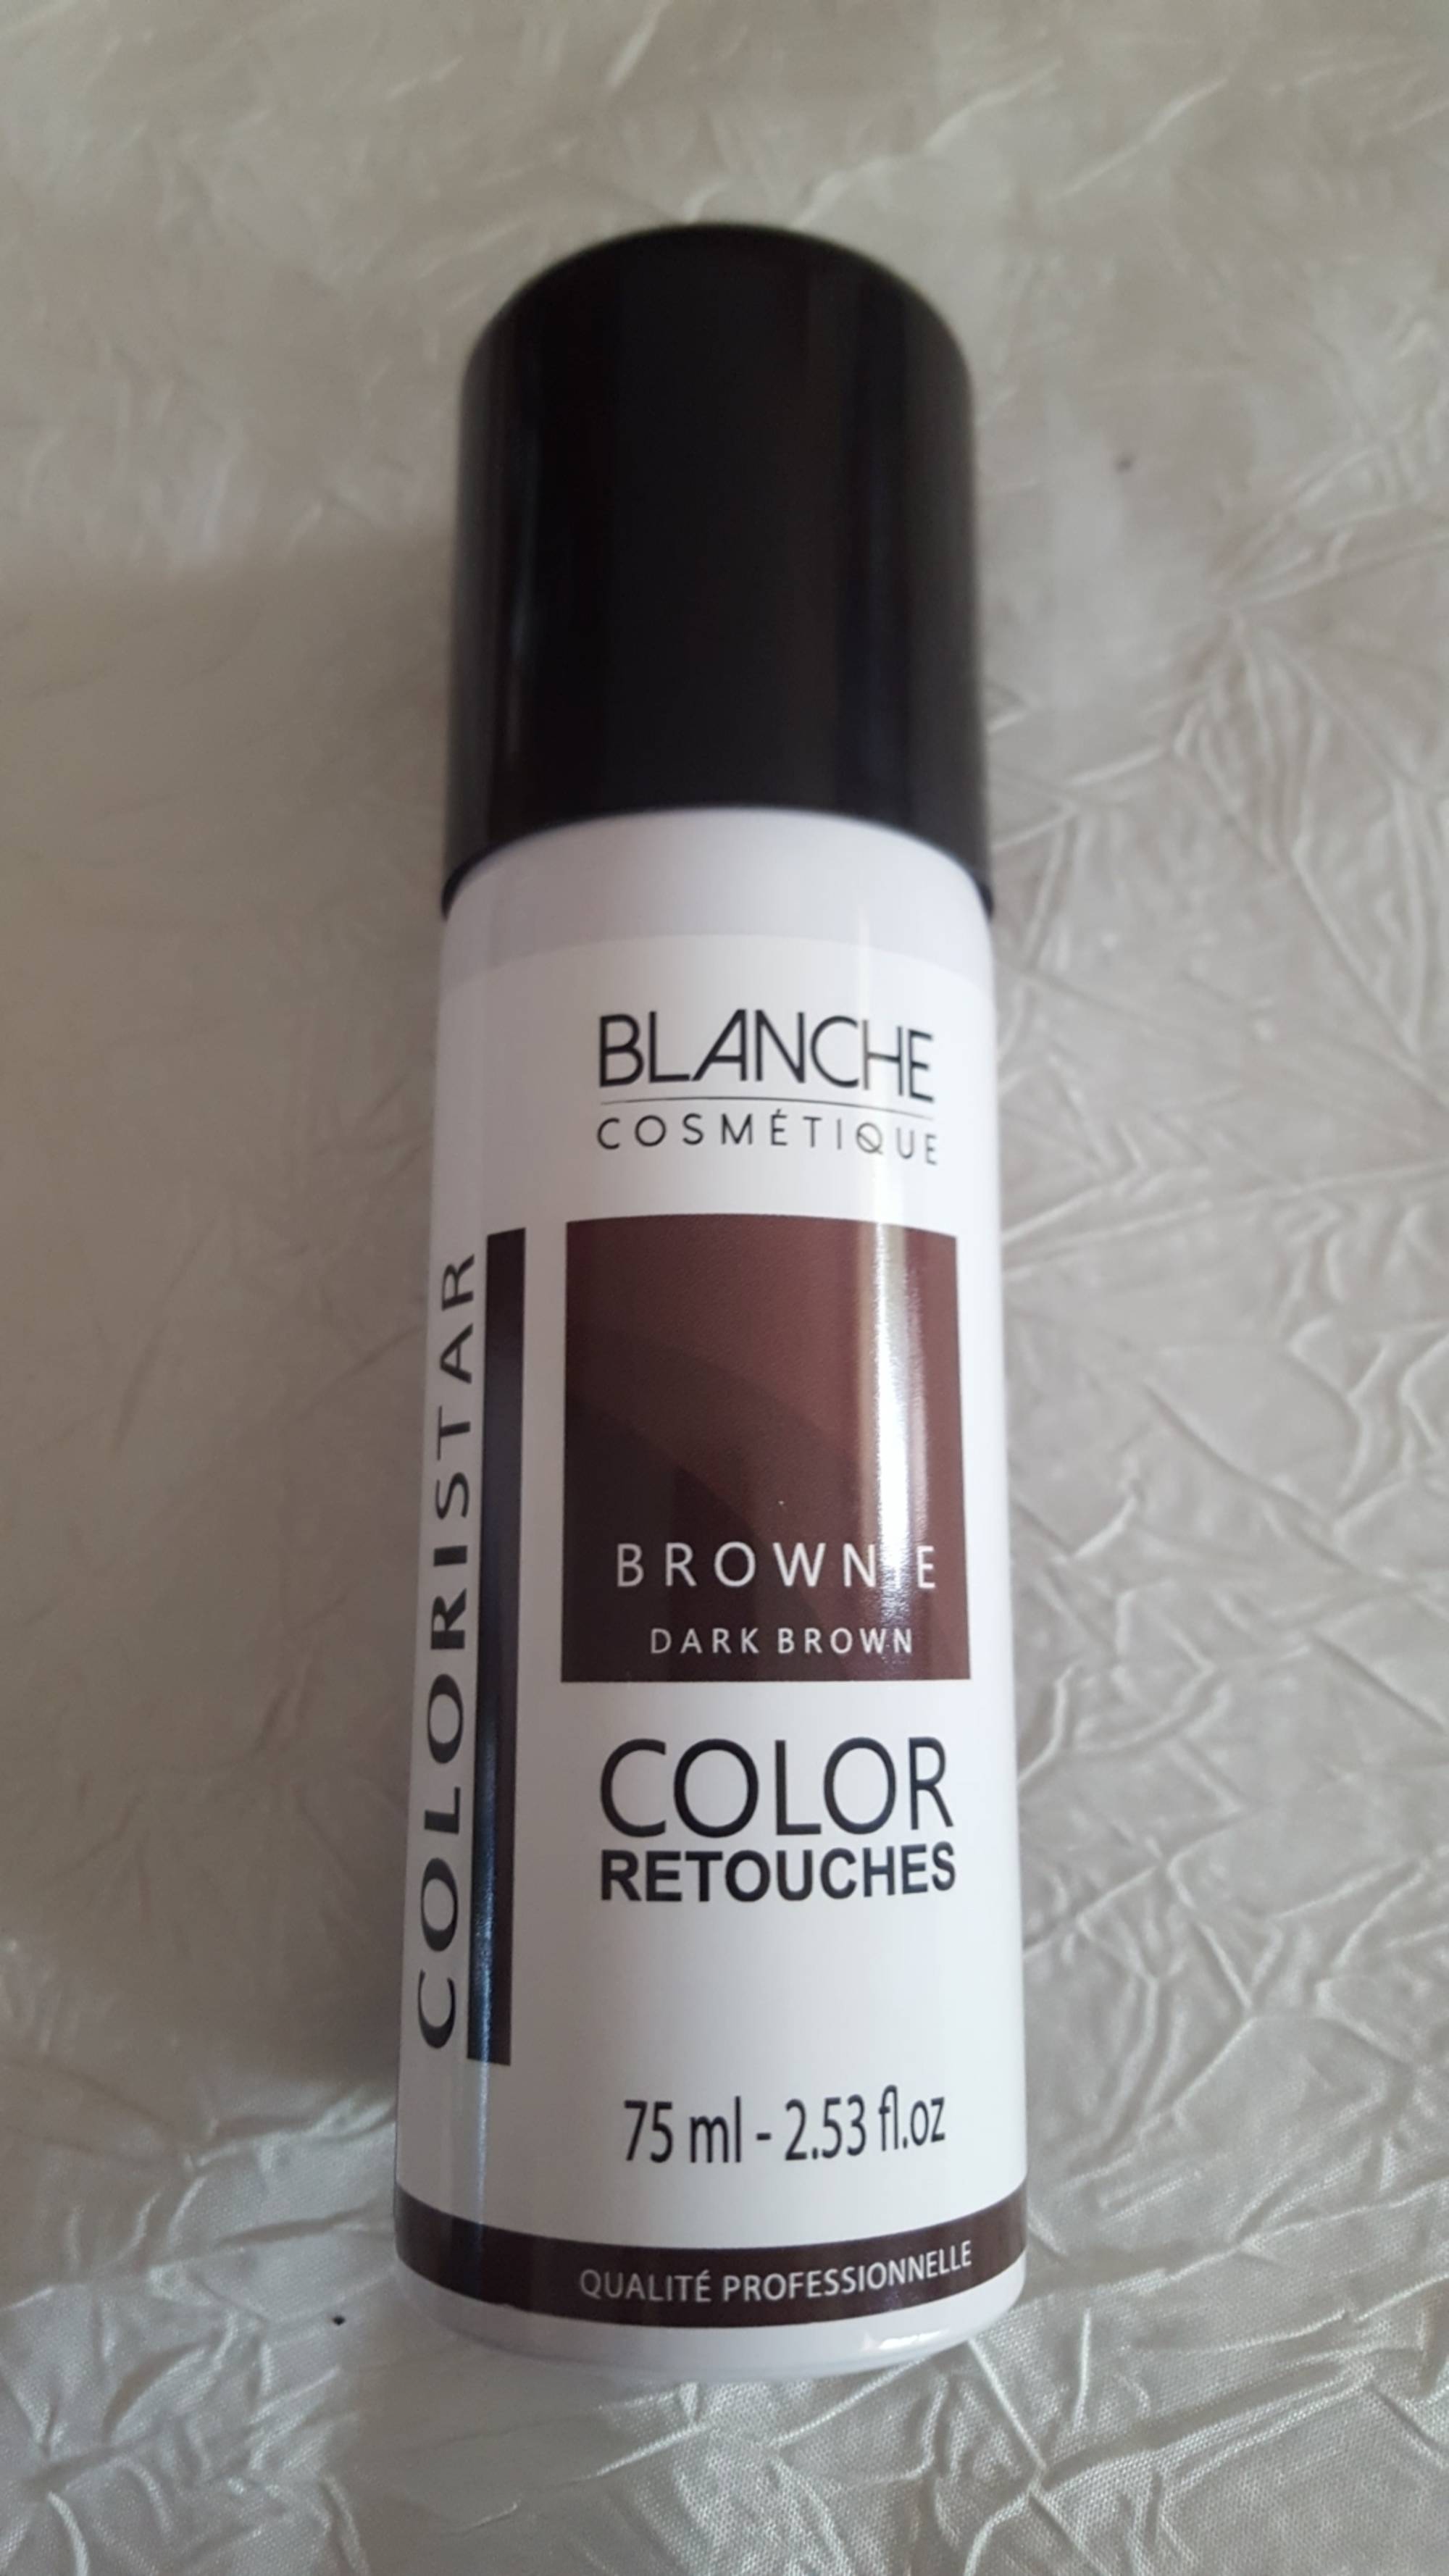 BLANCHE COSMETIQUE - Colori star - Color retouches browne